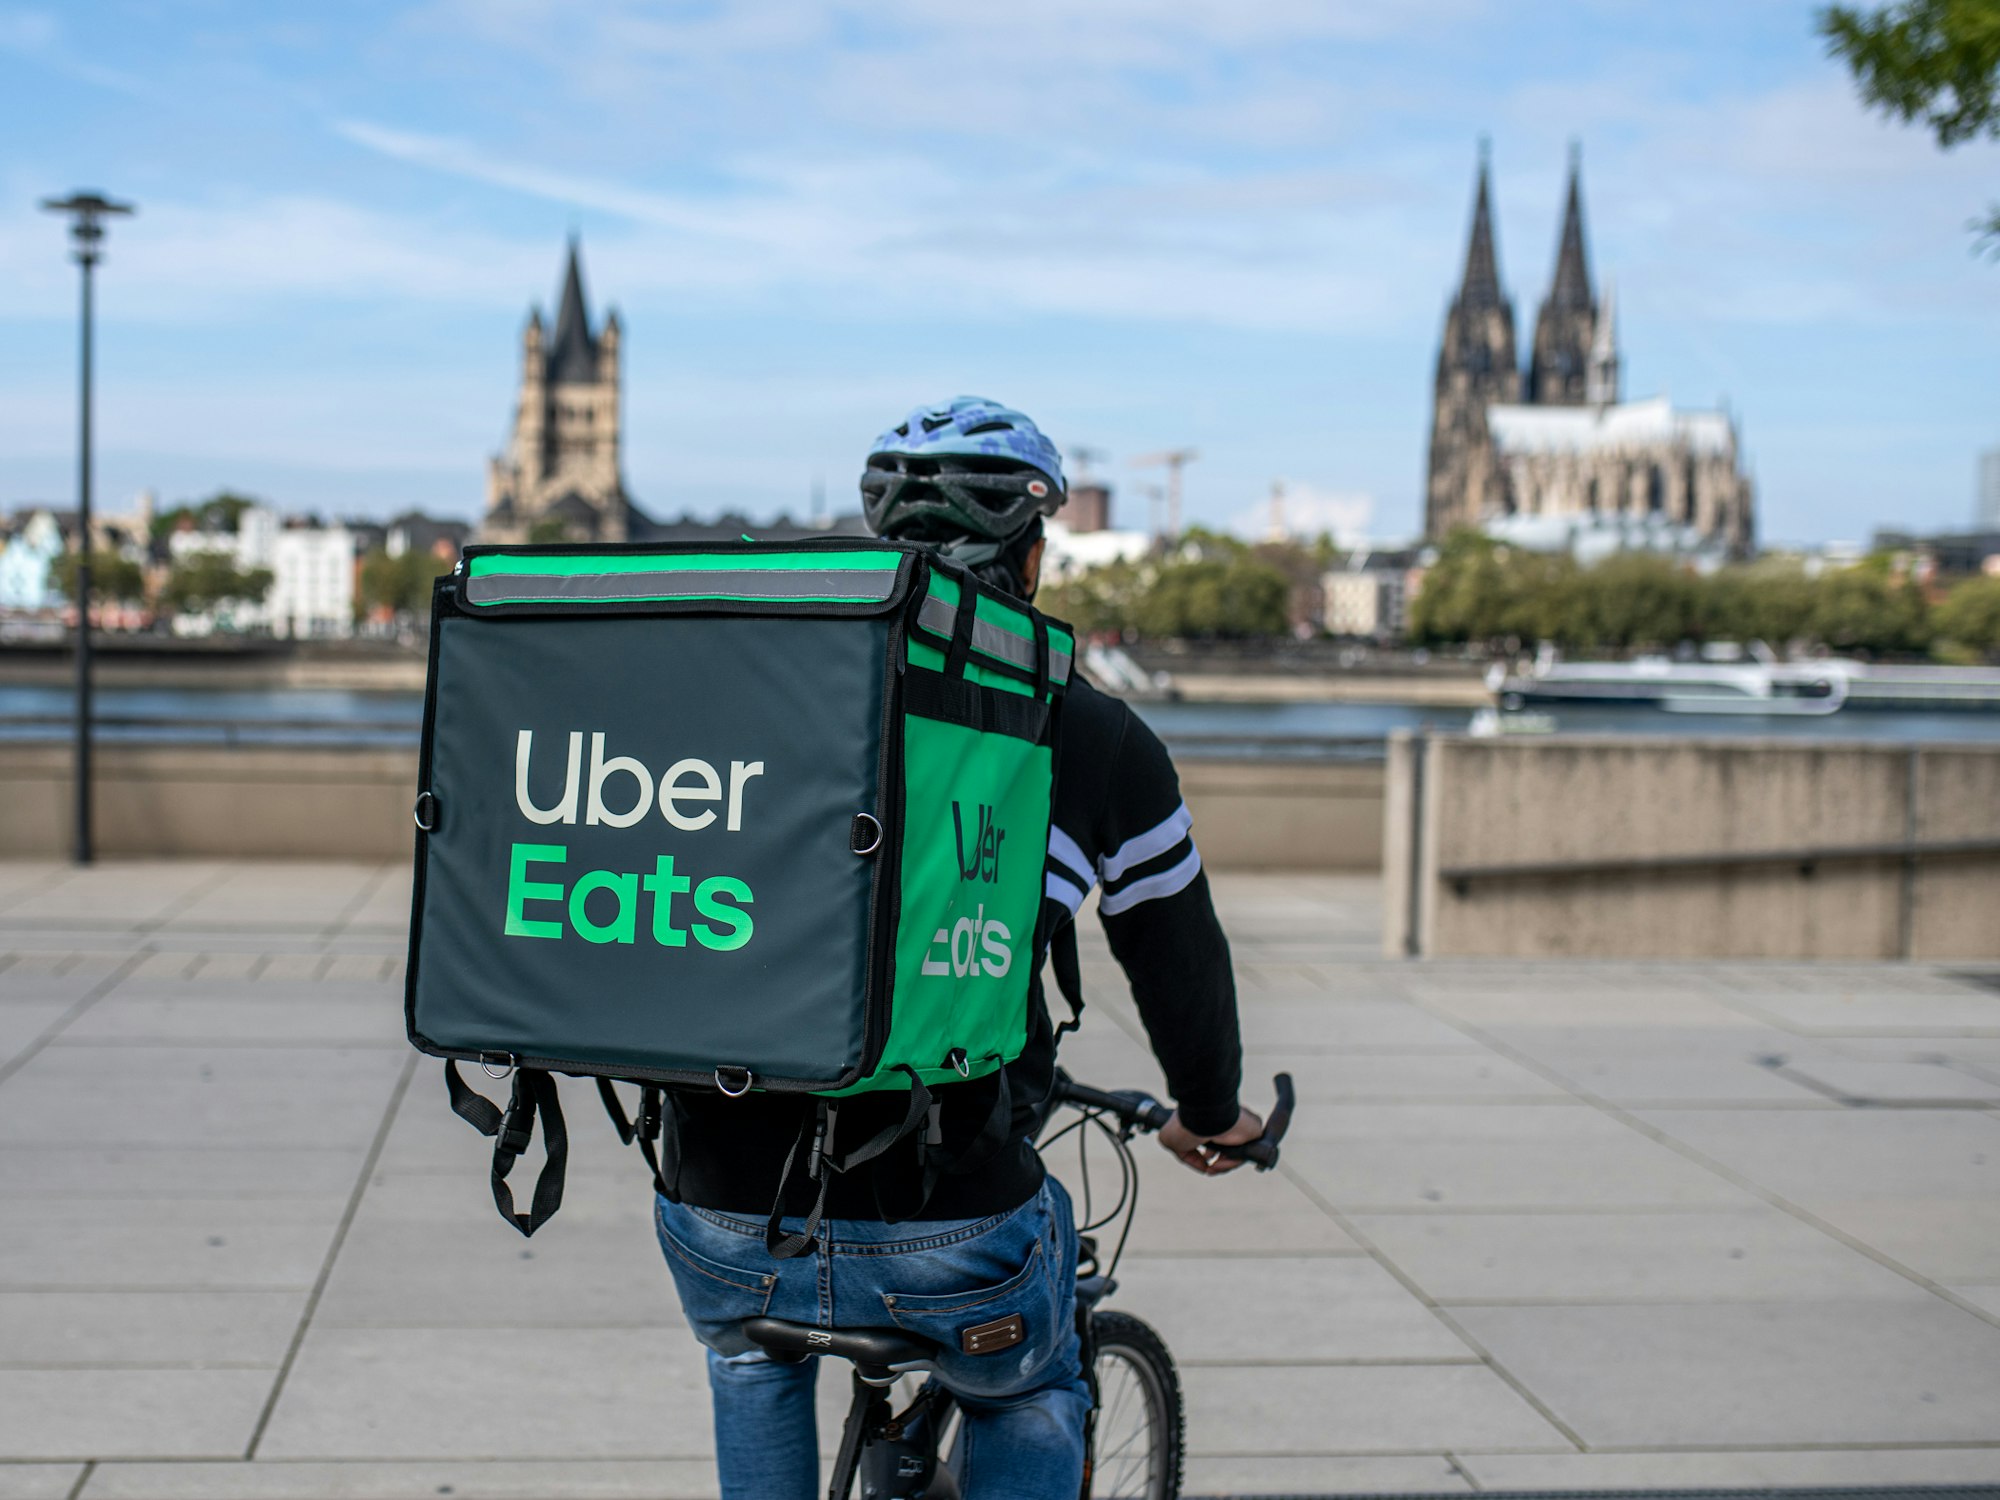 Ein Radfahrer mit großer Essenstasche von Uber Eats auf dem Rücken.